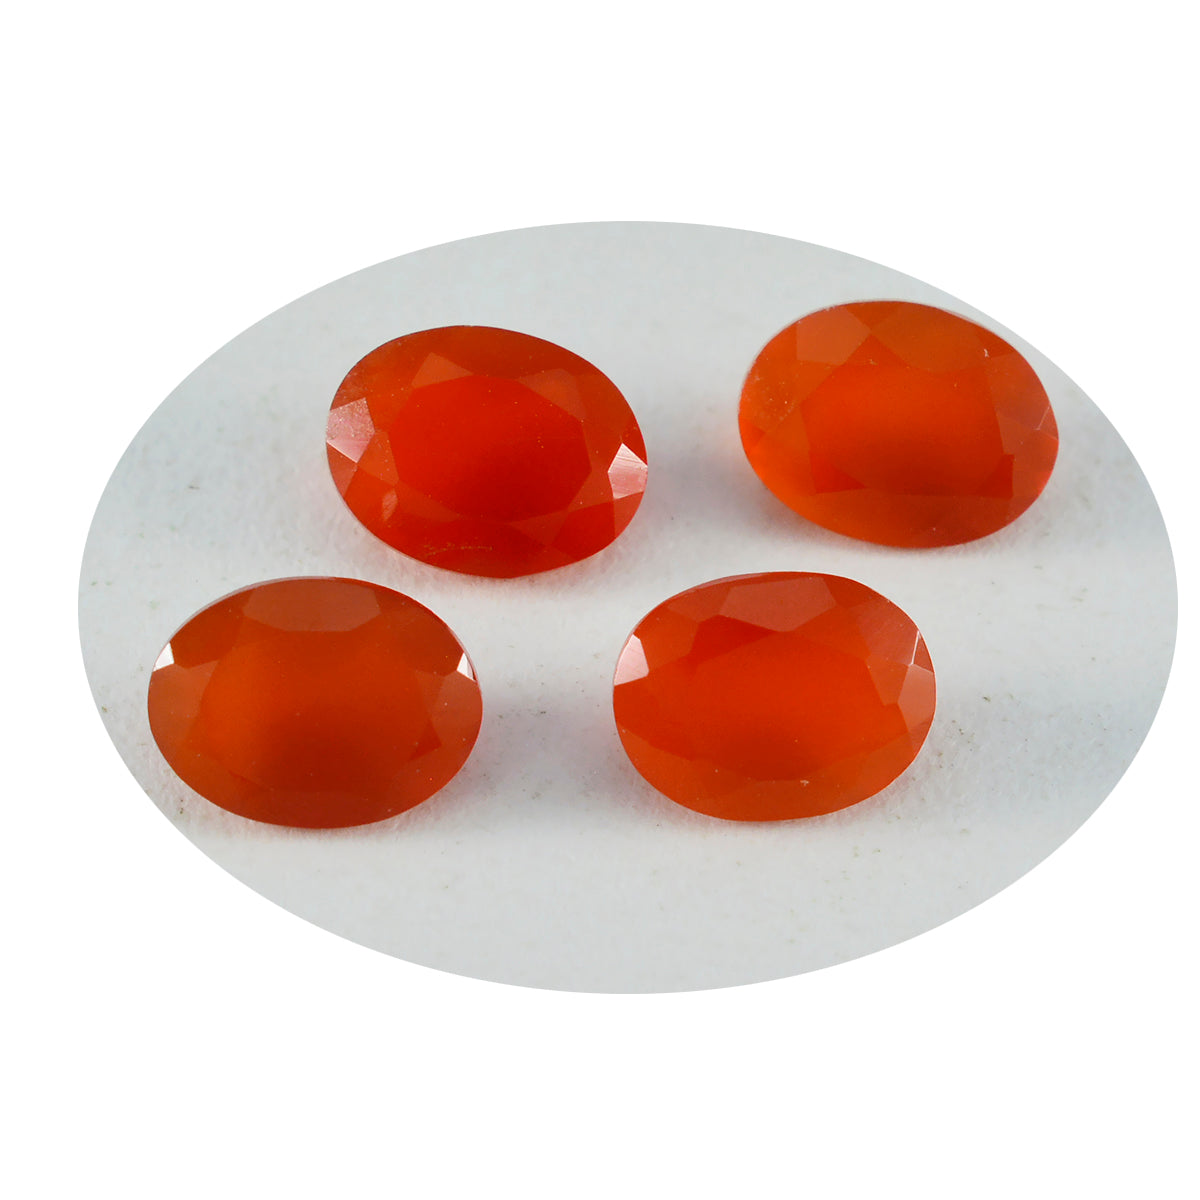 Riyogems 1PC natuurlijke rode onyx gefacetteerd 10x12 mm ovale vorm geweldige kwaliteitssteen